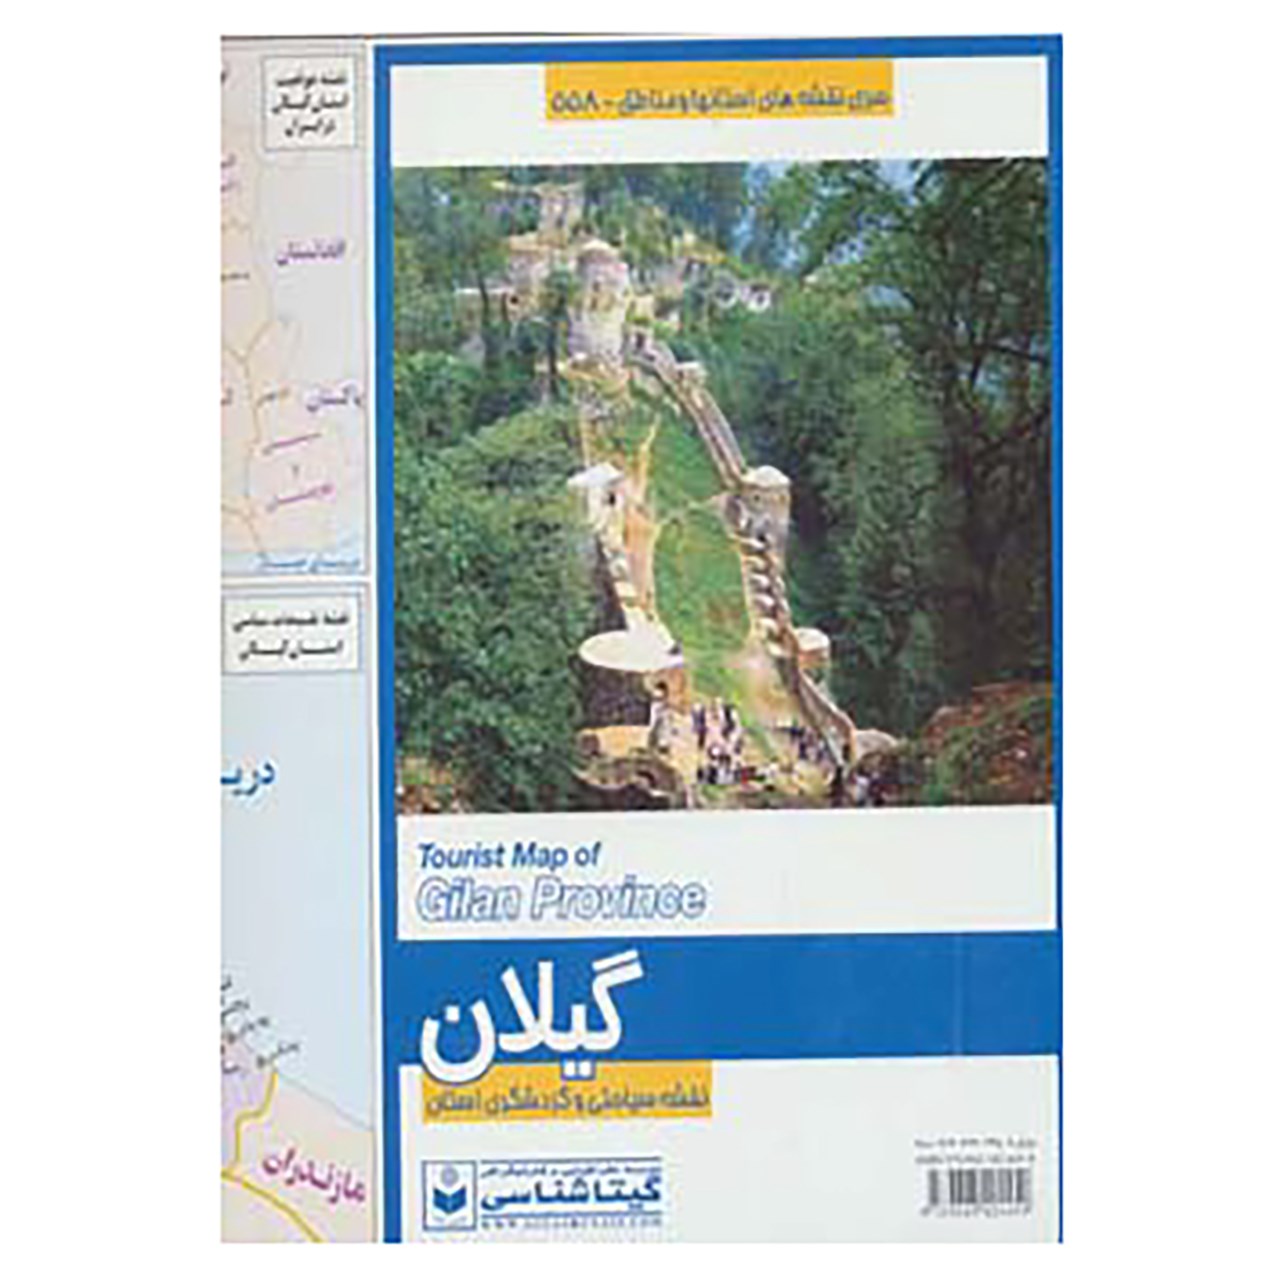 کتاب نقشه سیاحتی و گردشگری استان گیلان کد 558 اثر گیتاشناسی